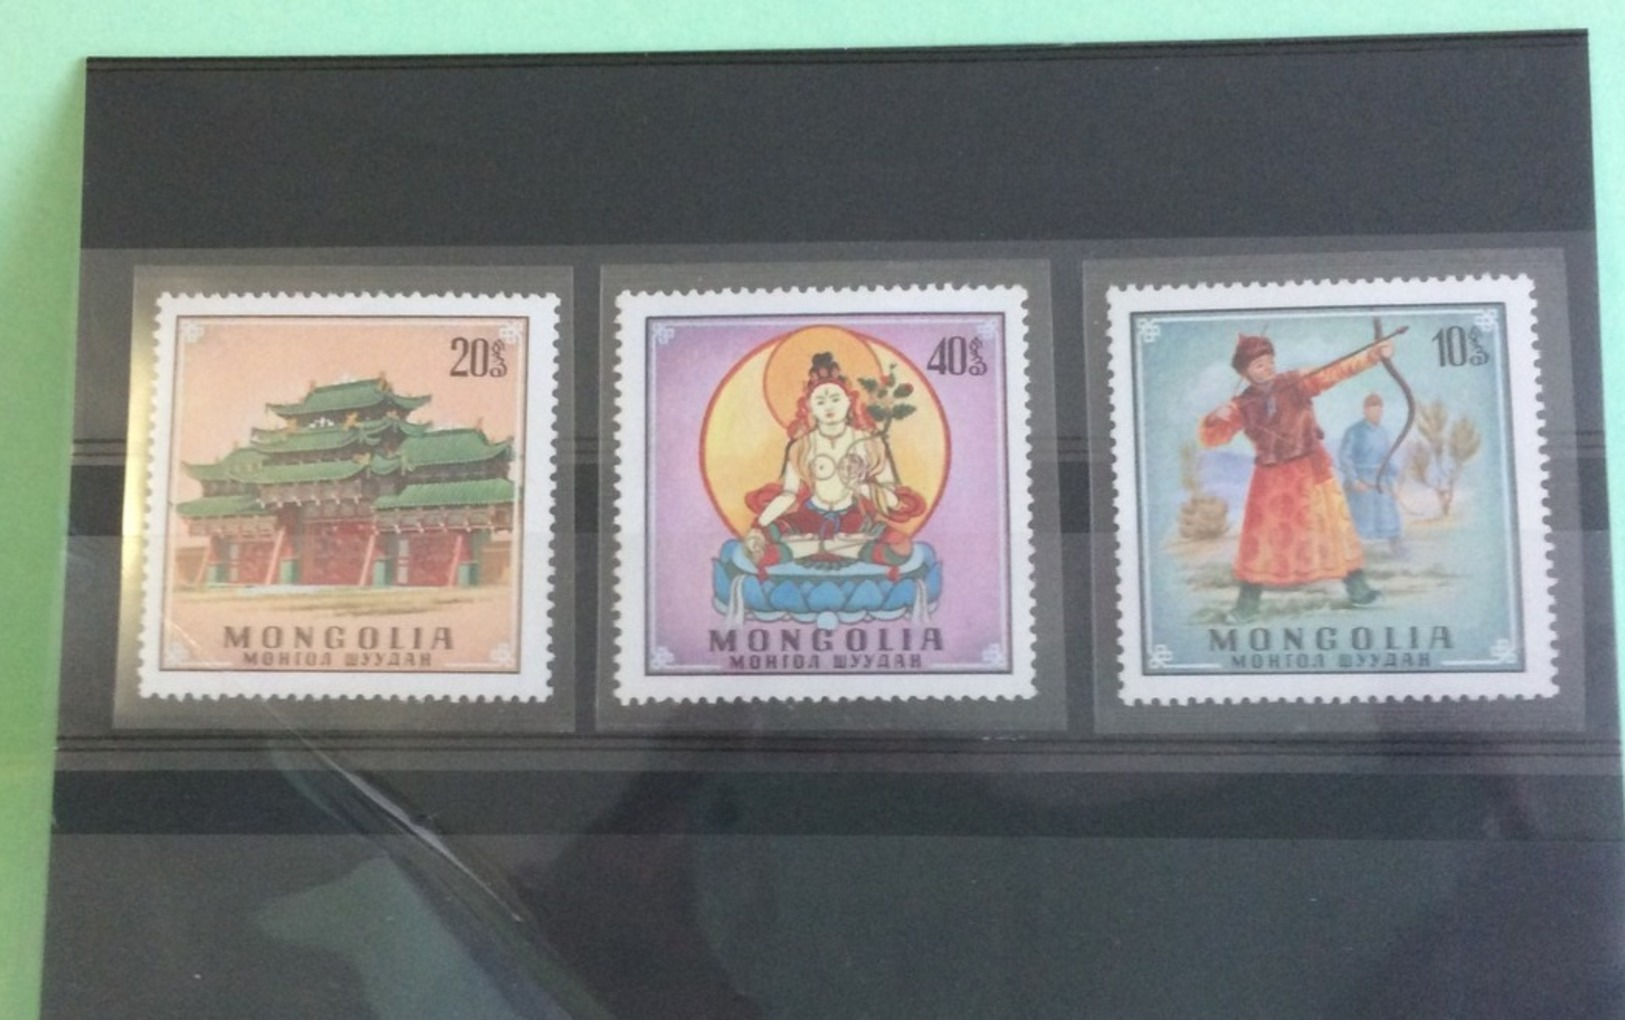 Lot timbres neufs, Monde Afrique,Amérique,Asie,Europe,Pays voir photos (n°10)